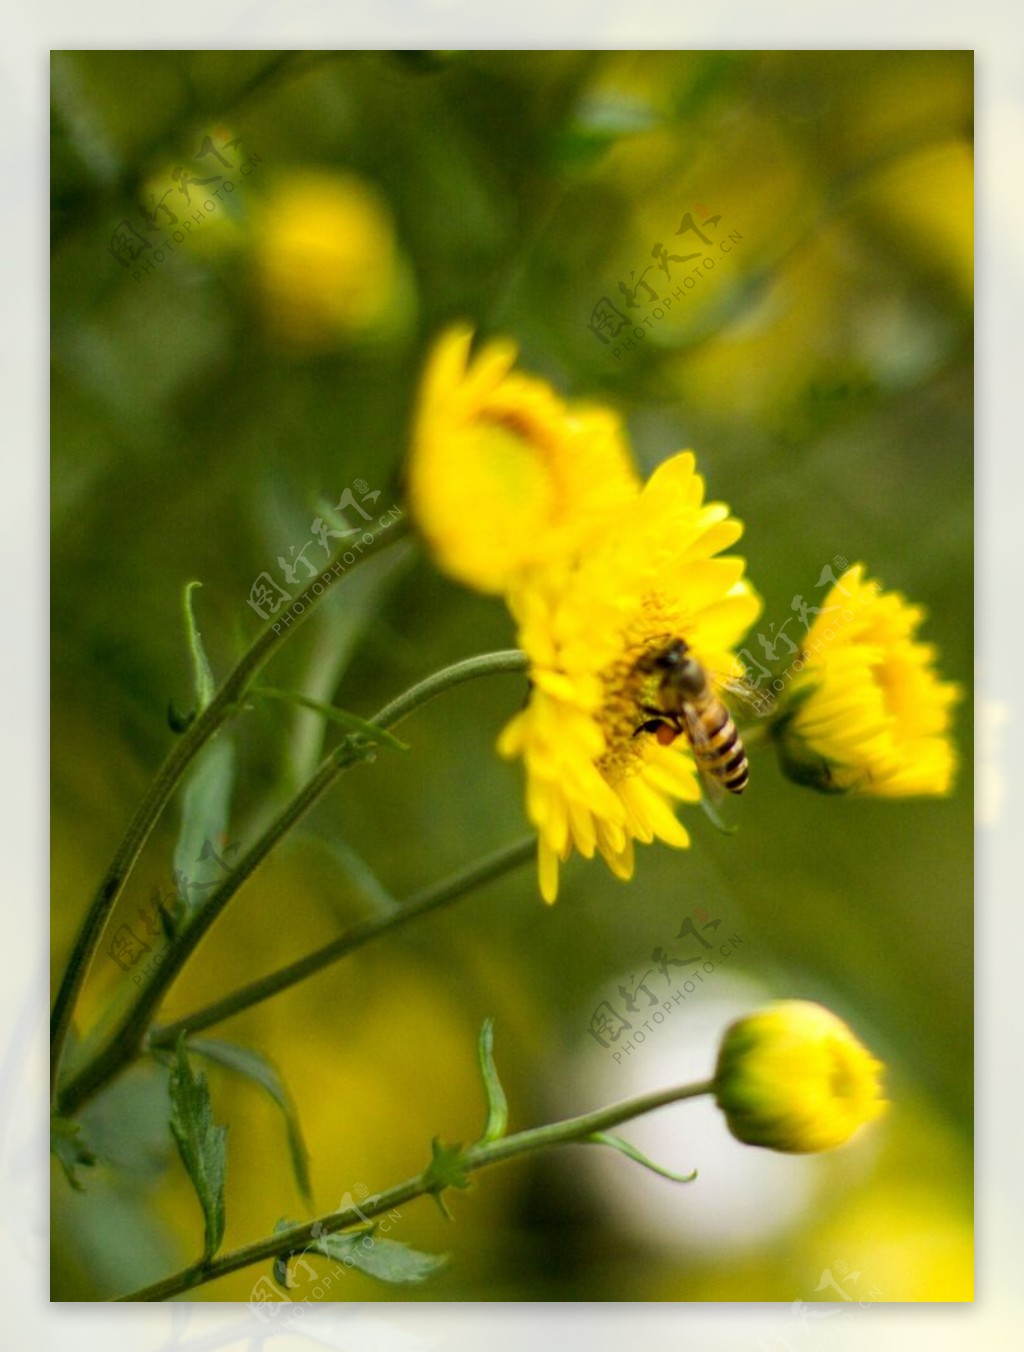 菊花上的蜜蜂图片